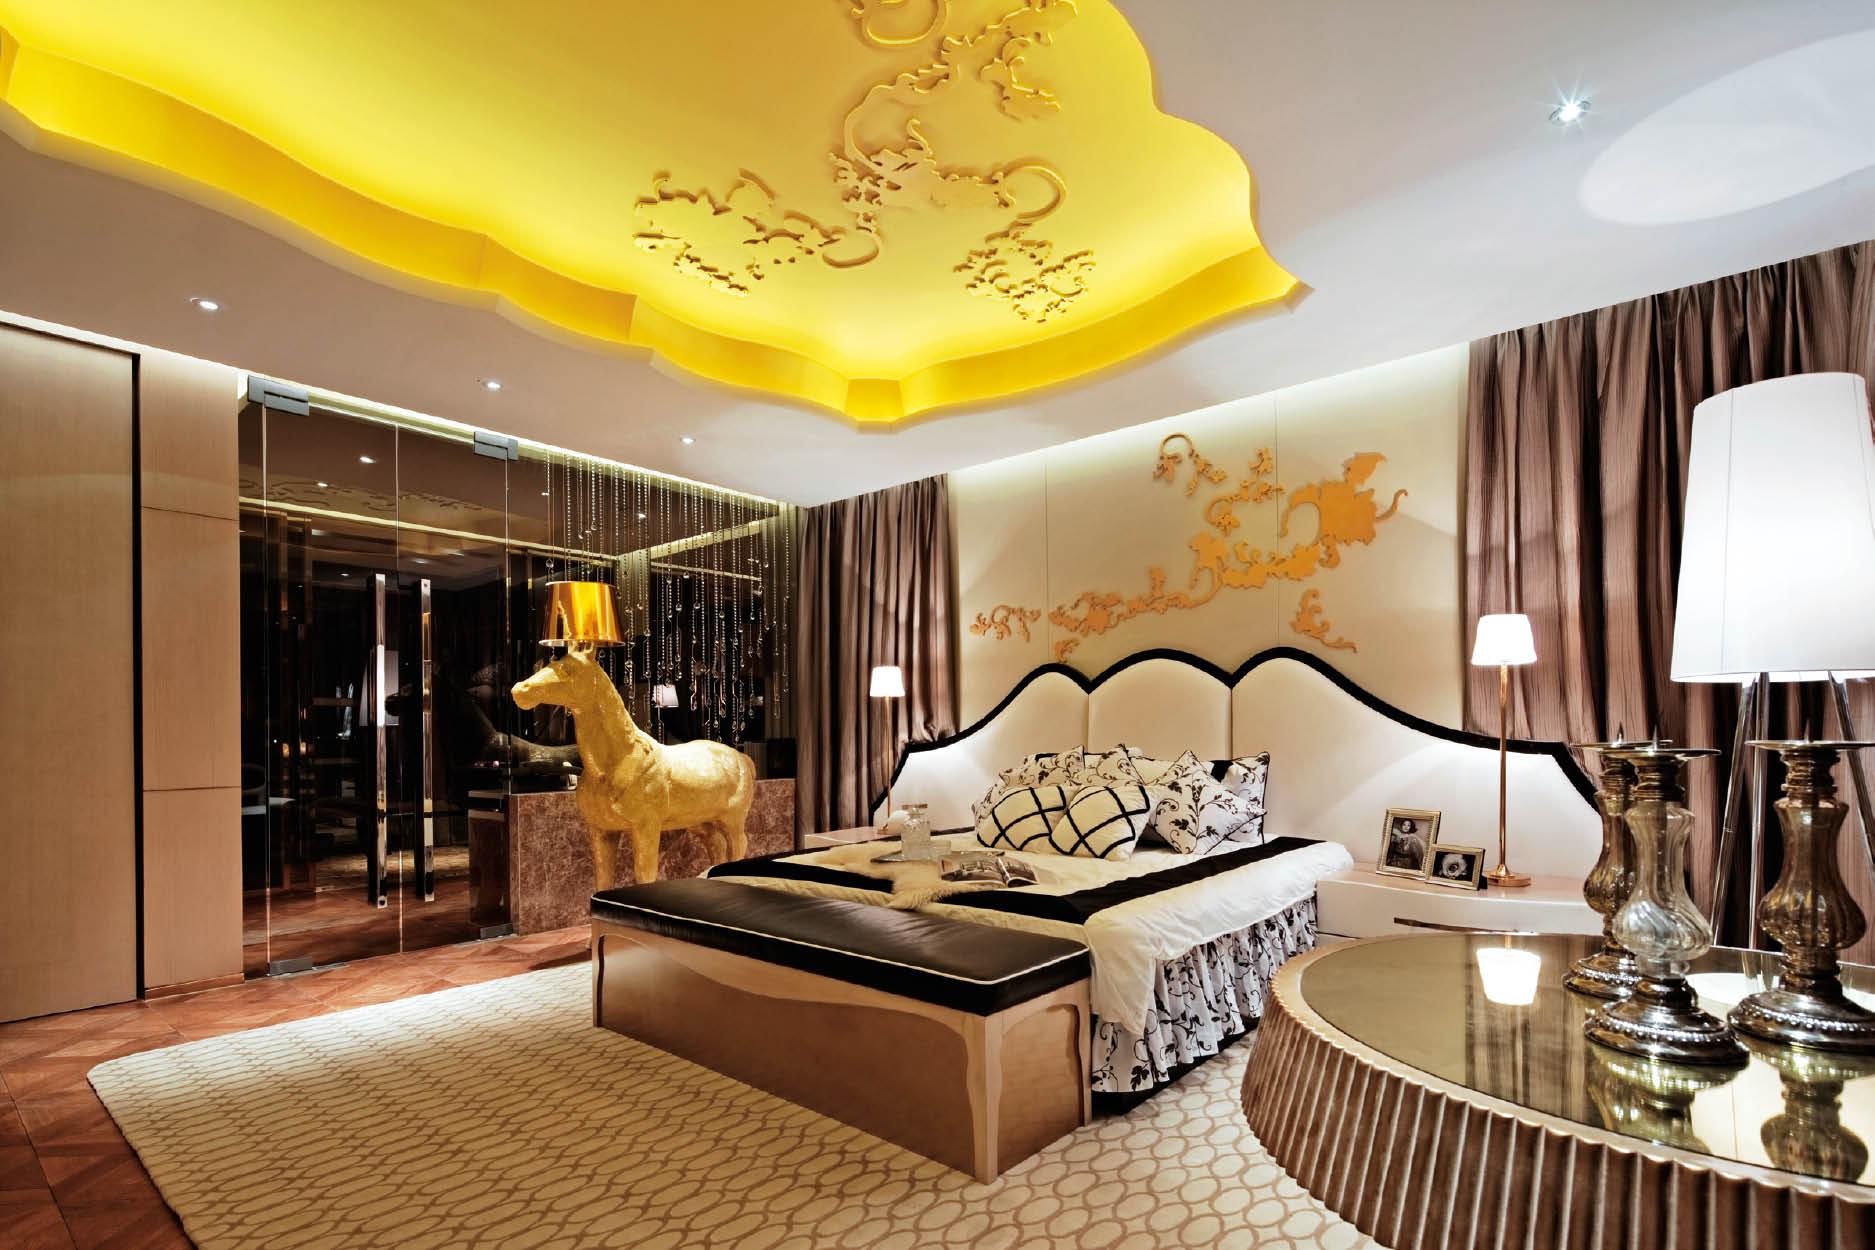 Step Inside a Luxurious Jiangsu Province Residence